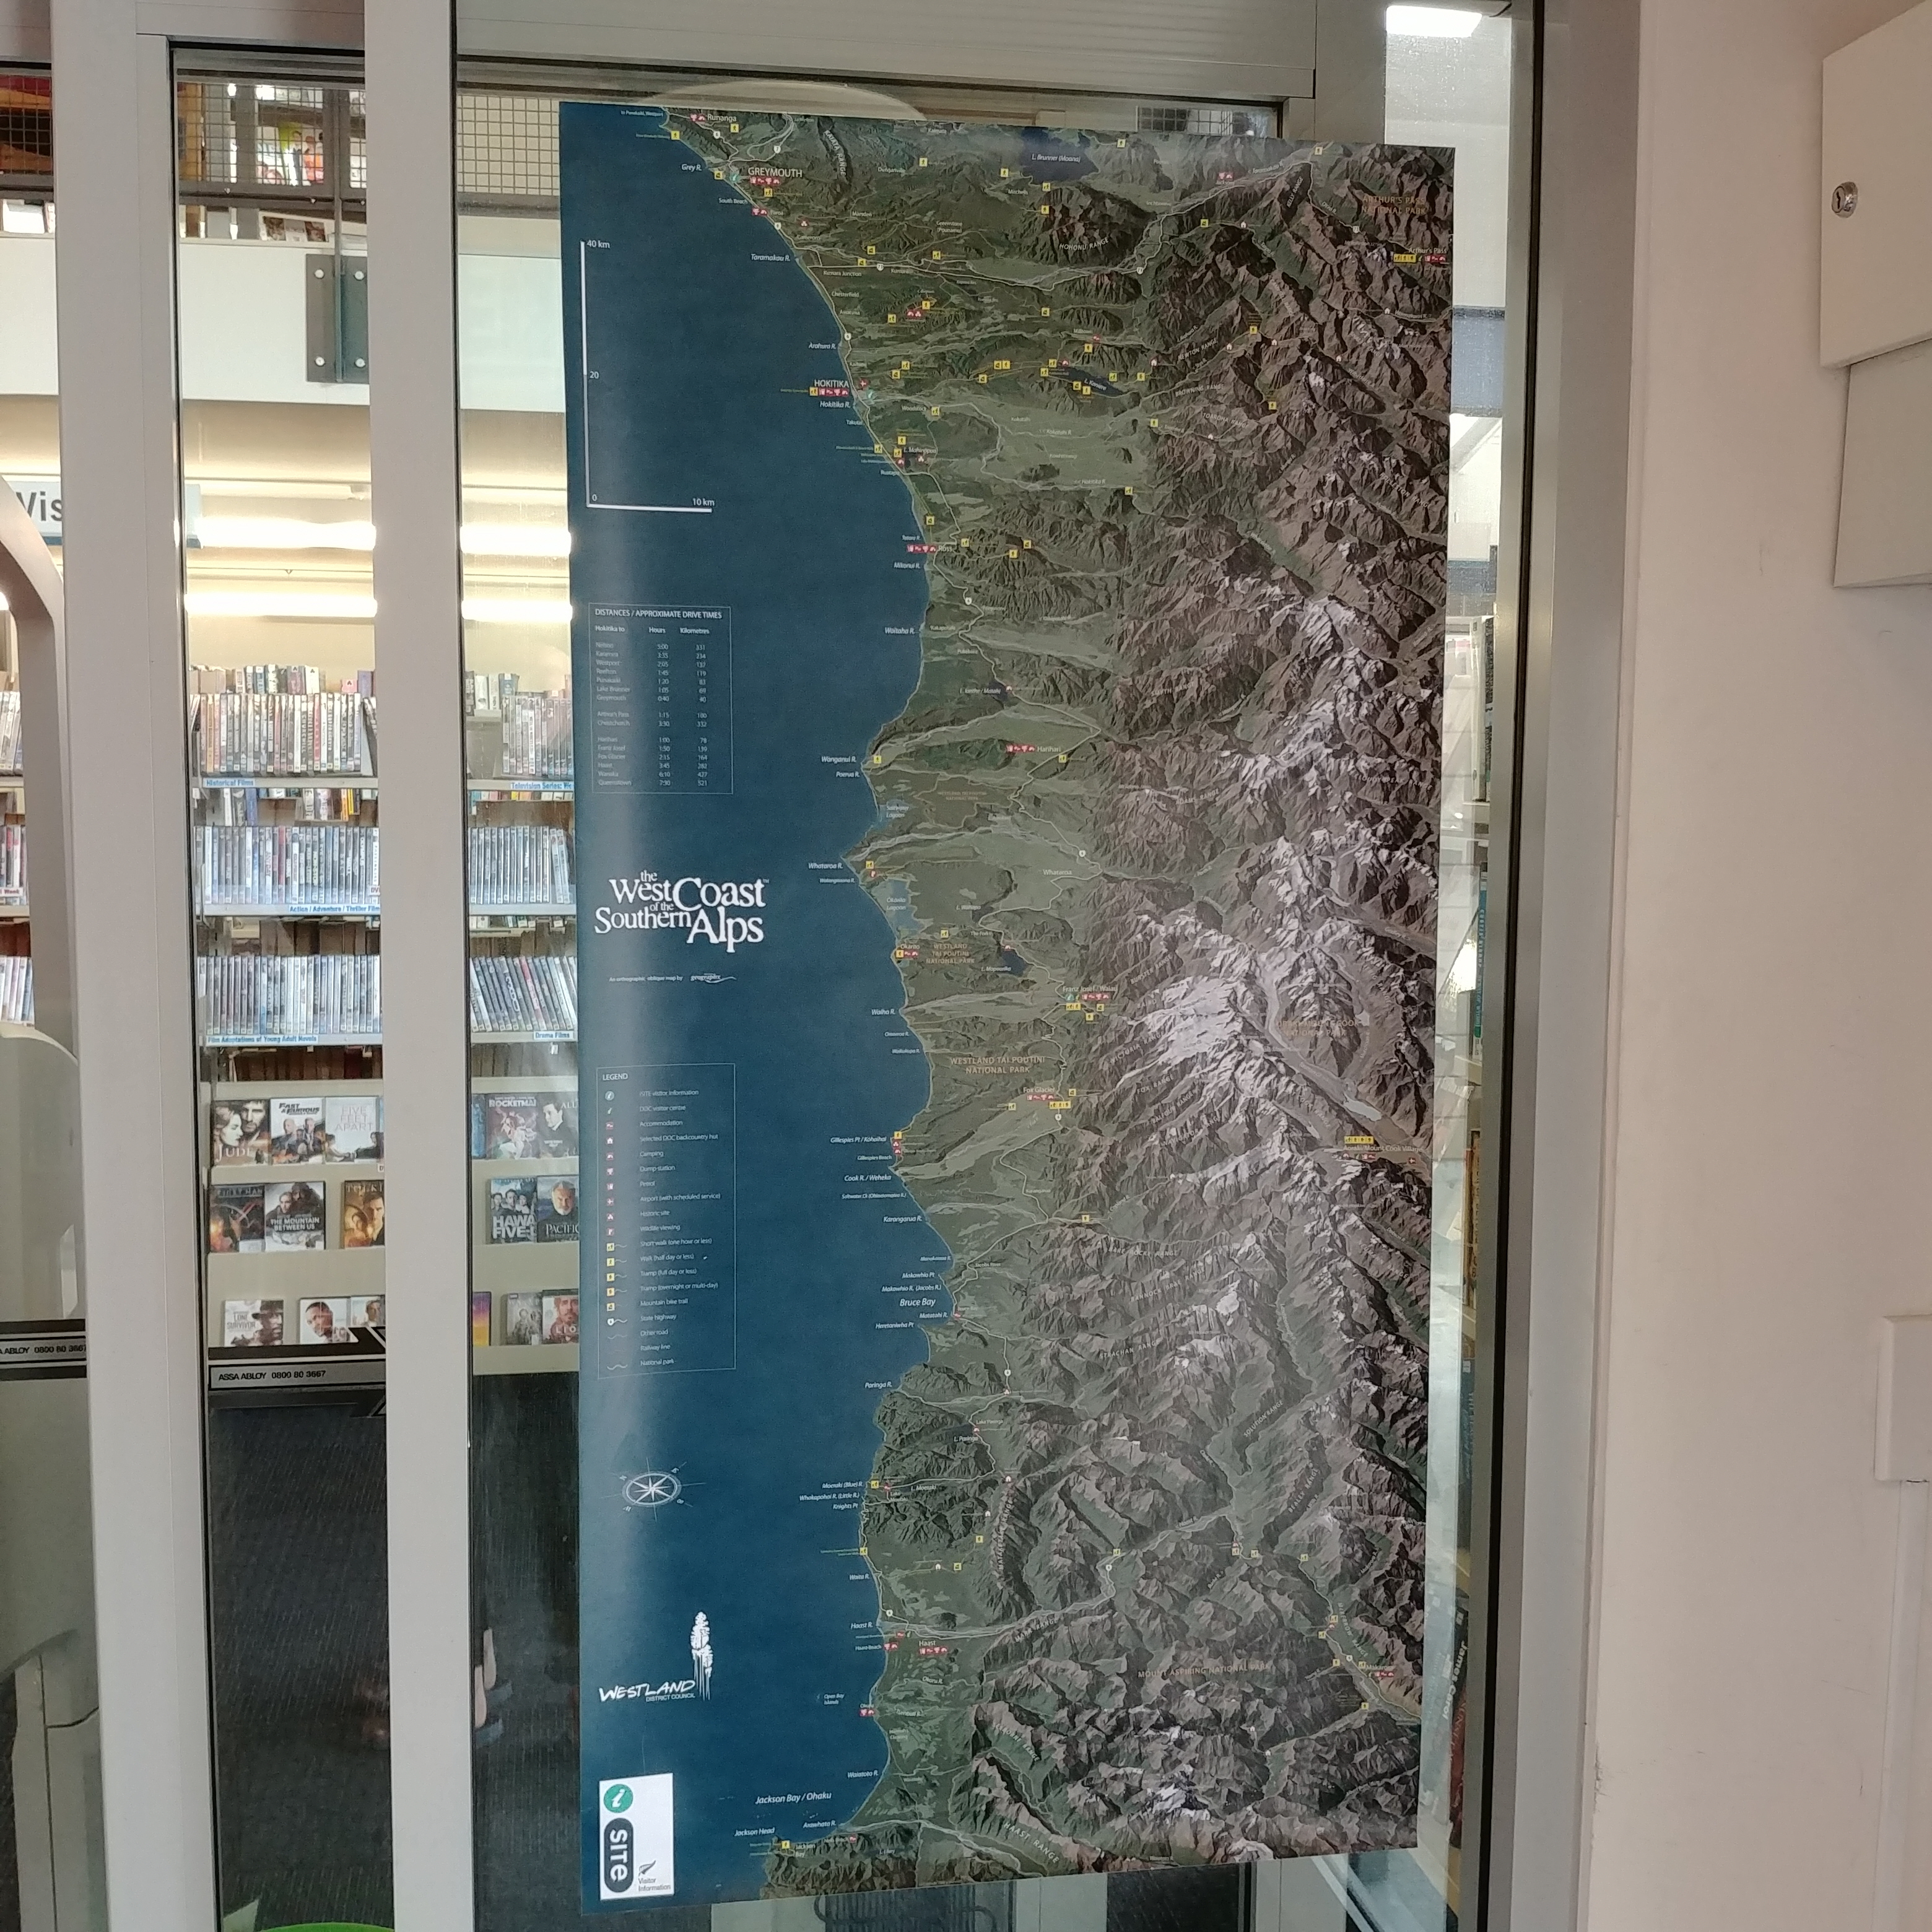 뉴질랜드 호키티카 여행 웨스트랜드 디스트릿 도서관 Westland District Library